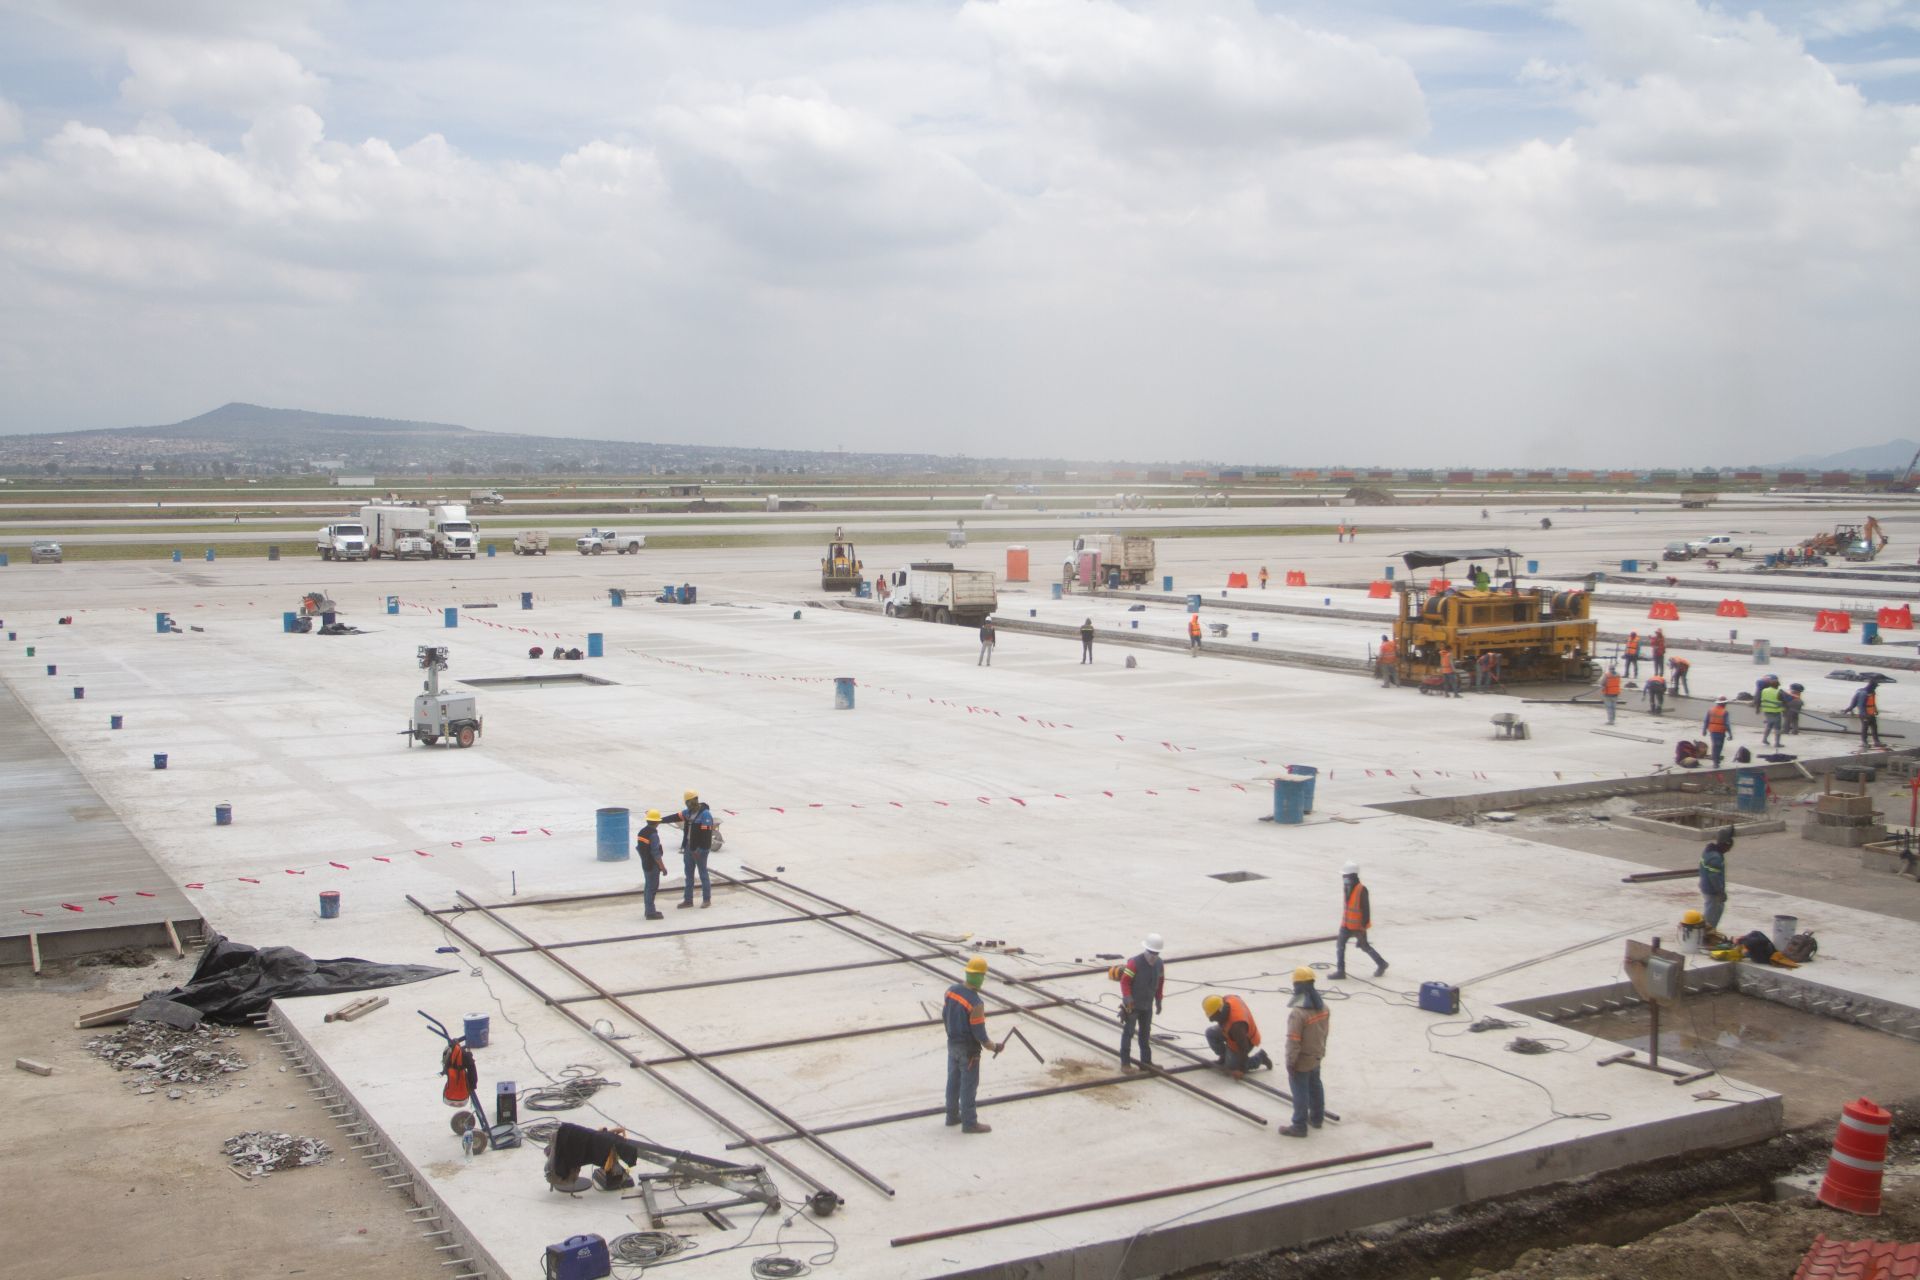 Se realizó un recorrido para medios de las obras del Aeropuerto Internacional Felipe Angeles (AIFA) en Santa Lucía, en el que se tiene planeado ejecutar las 61 operaciones por hora spermitidas en el AICM una vez que se recuperen los niveles de tráfico